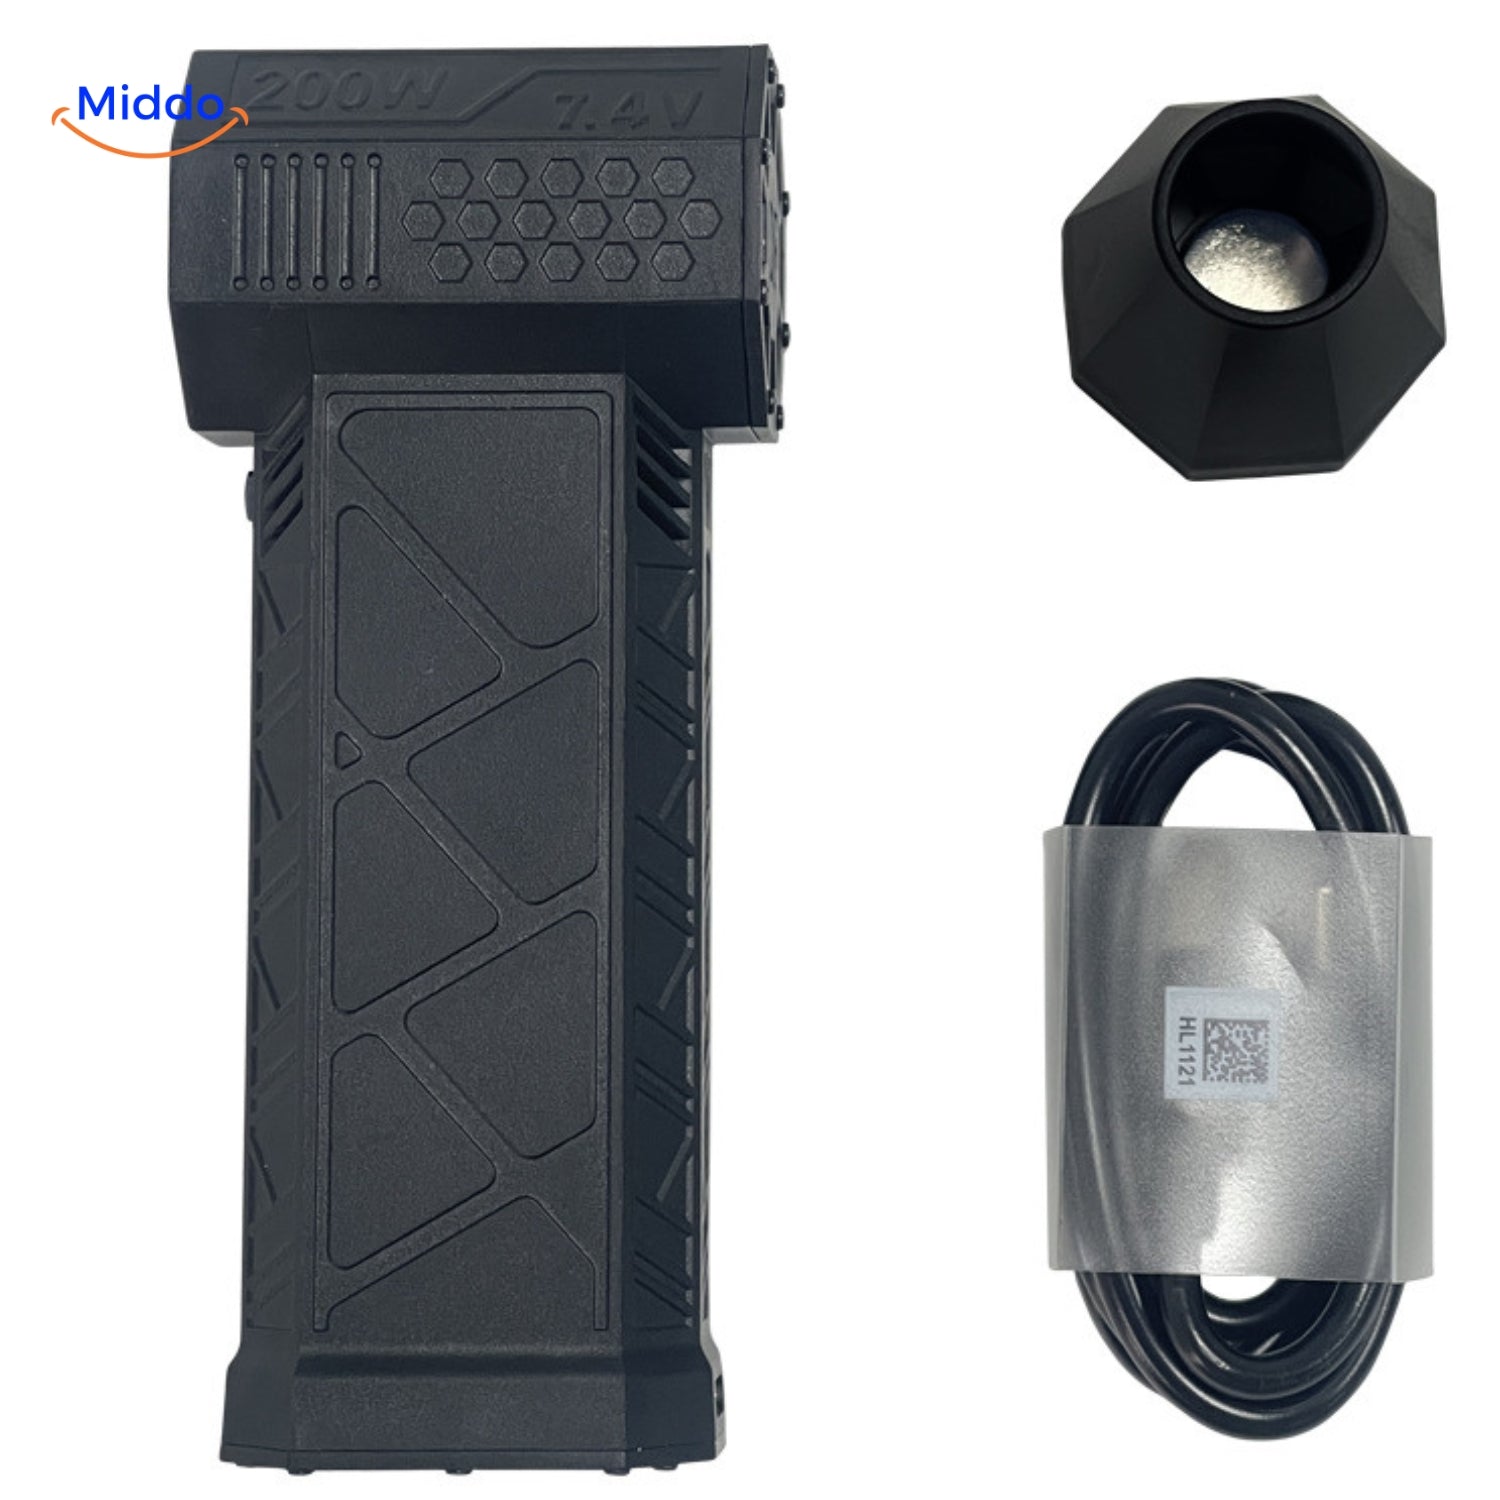 TurboJet Pro luchtblazer in zwart met mondstuk en USB-oplaadkabel